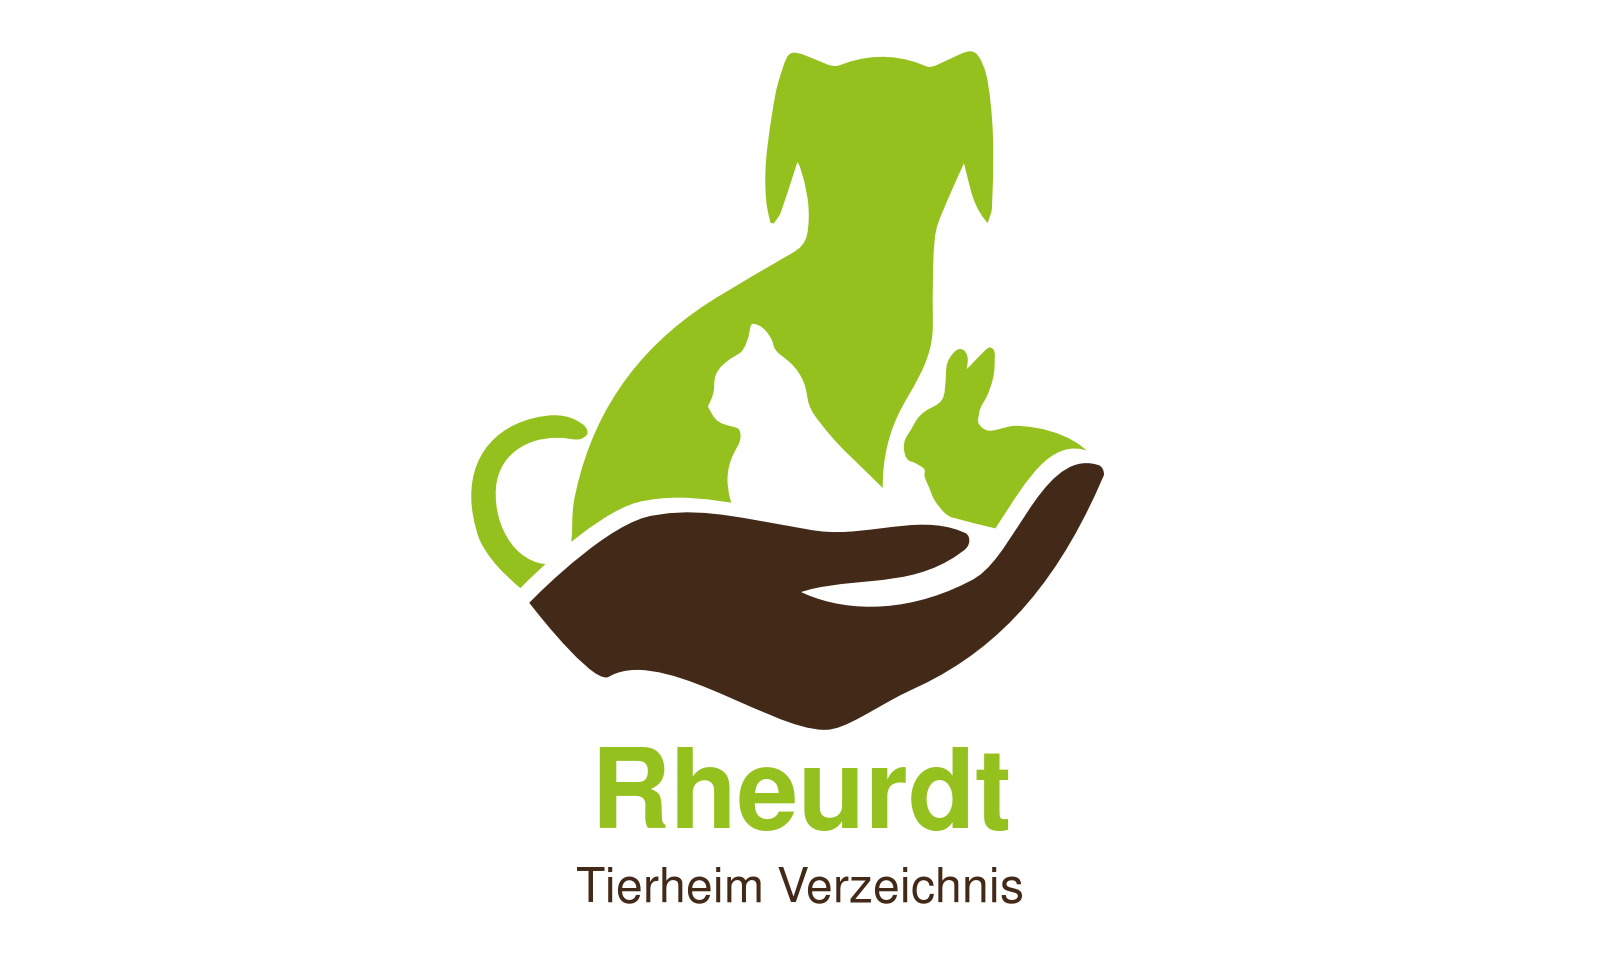 Tierheim Rheurdt